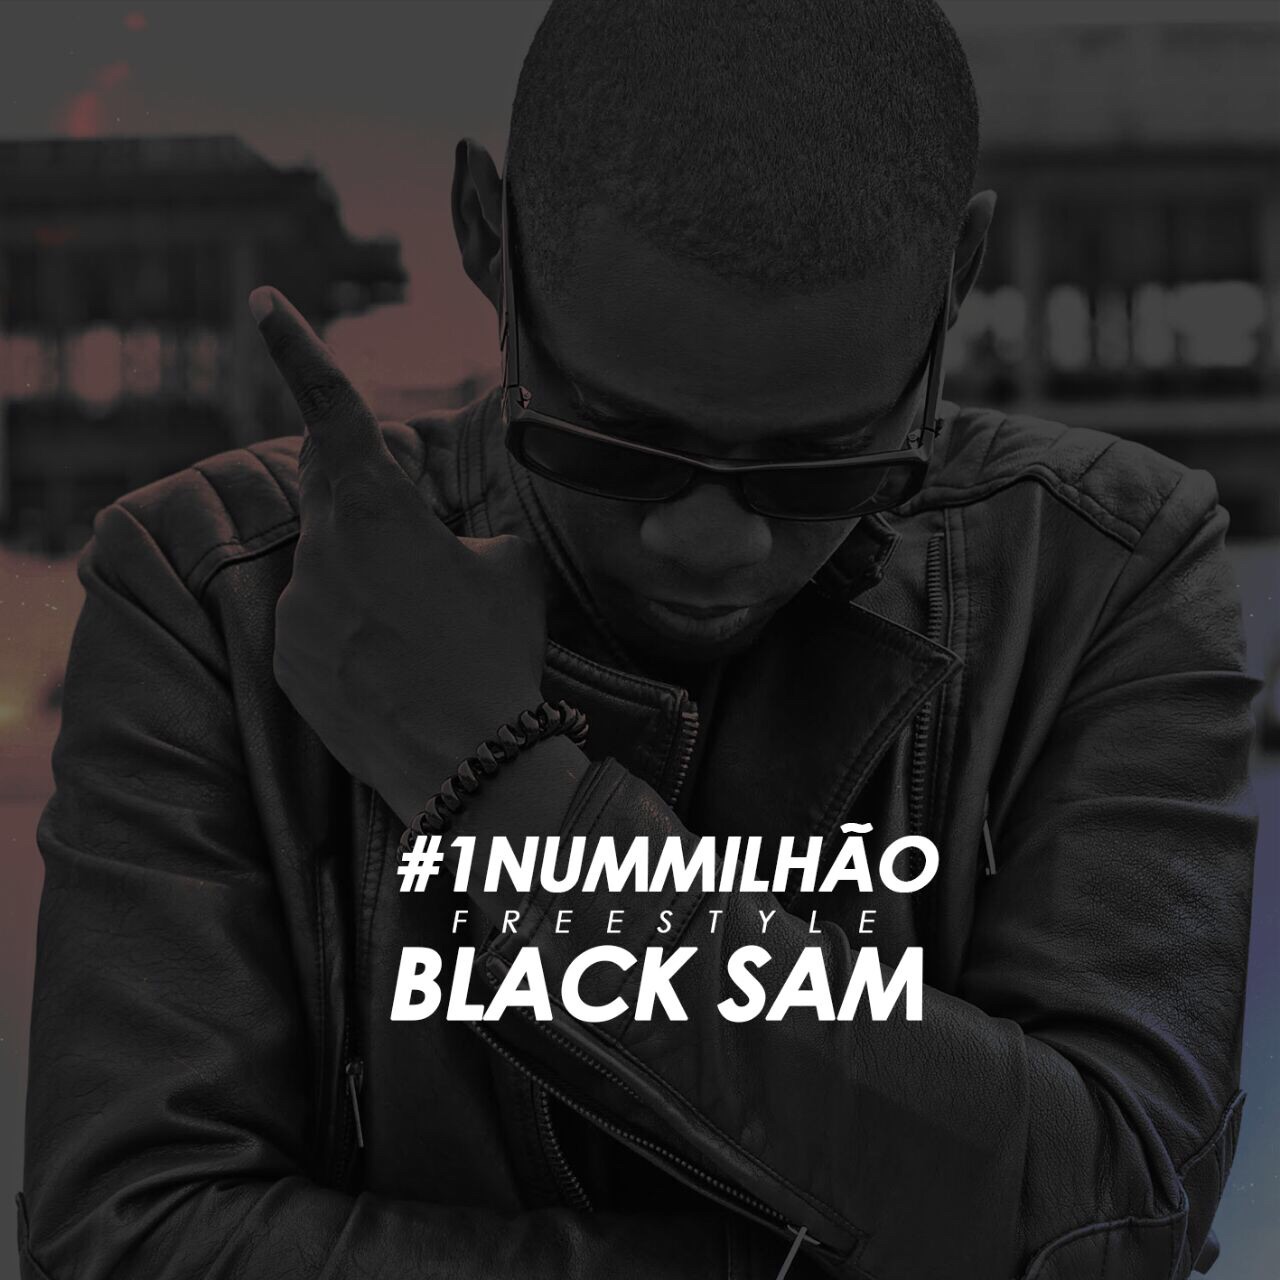 black sam - 1 num milhao